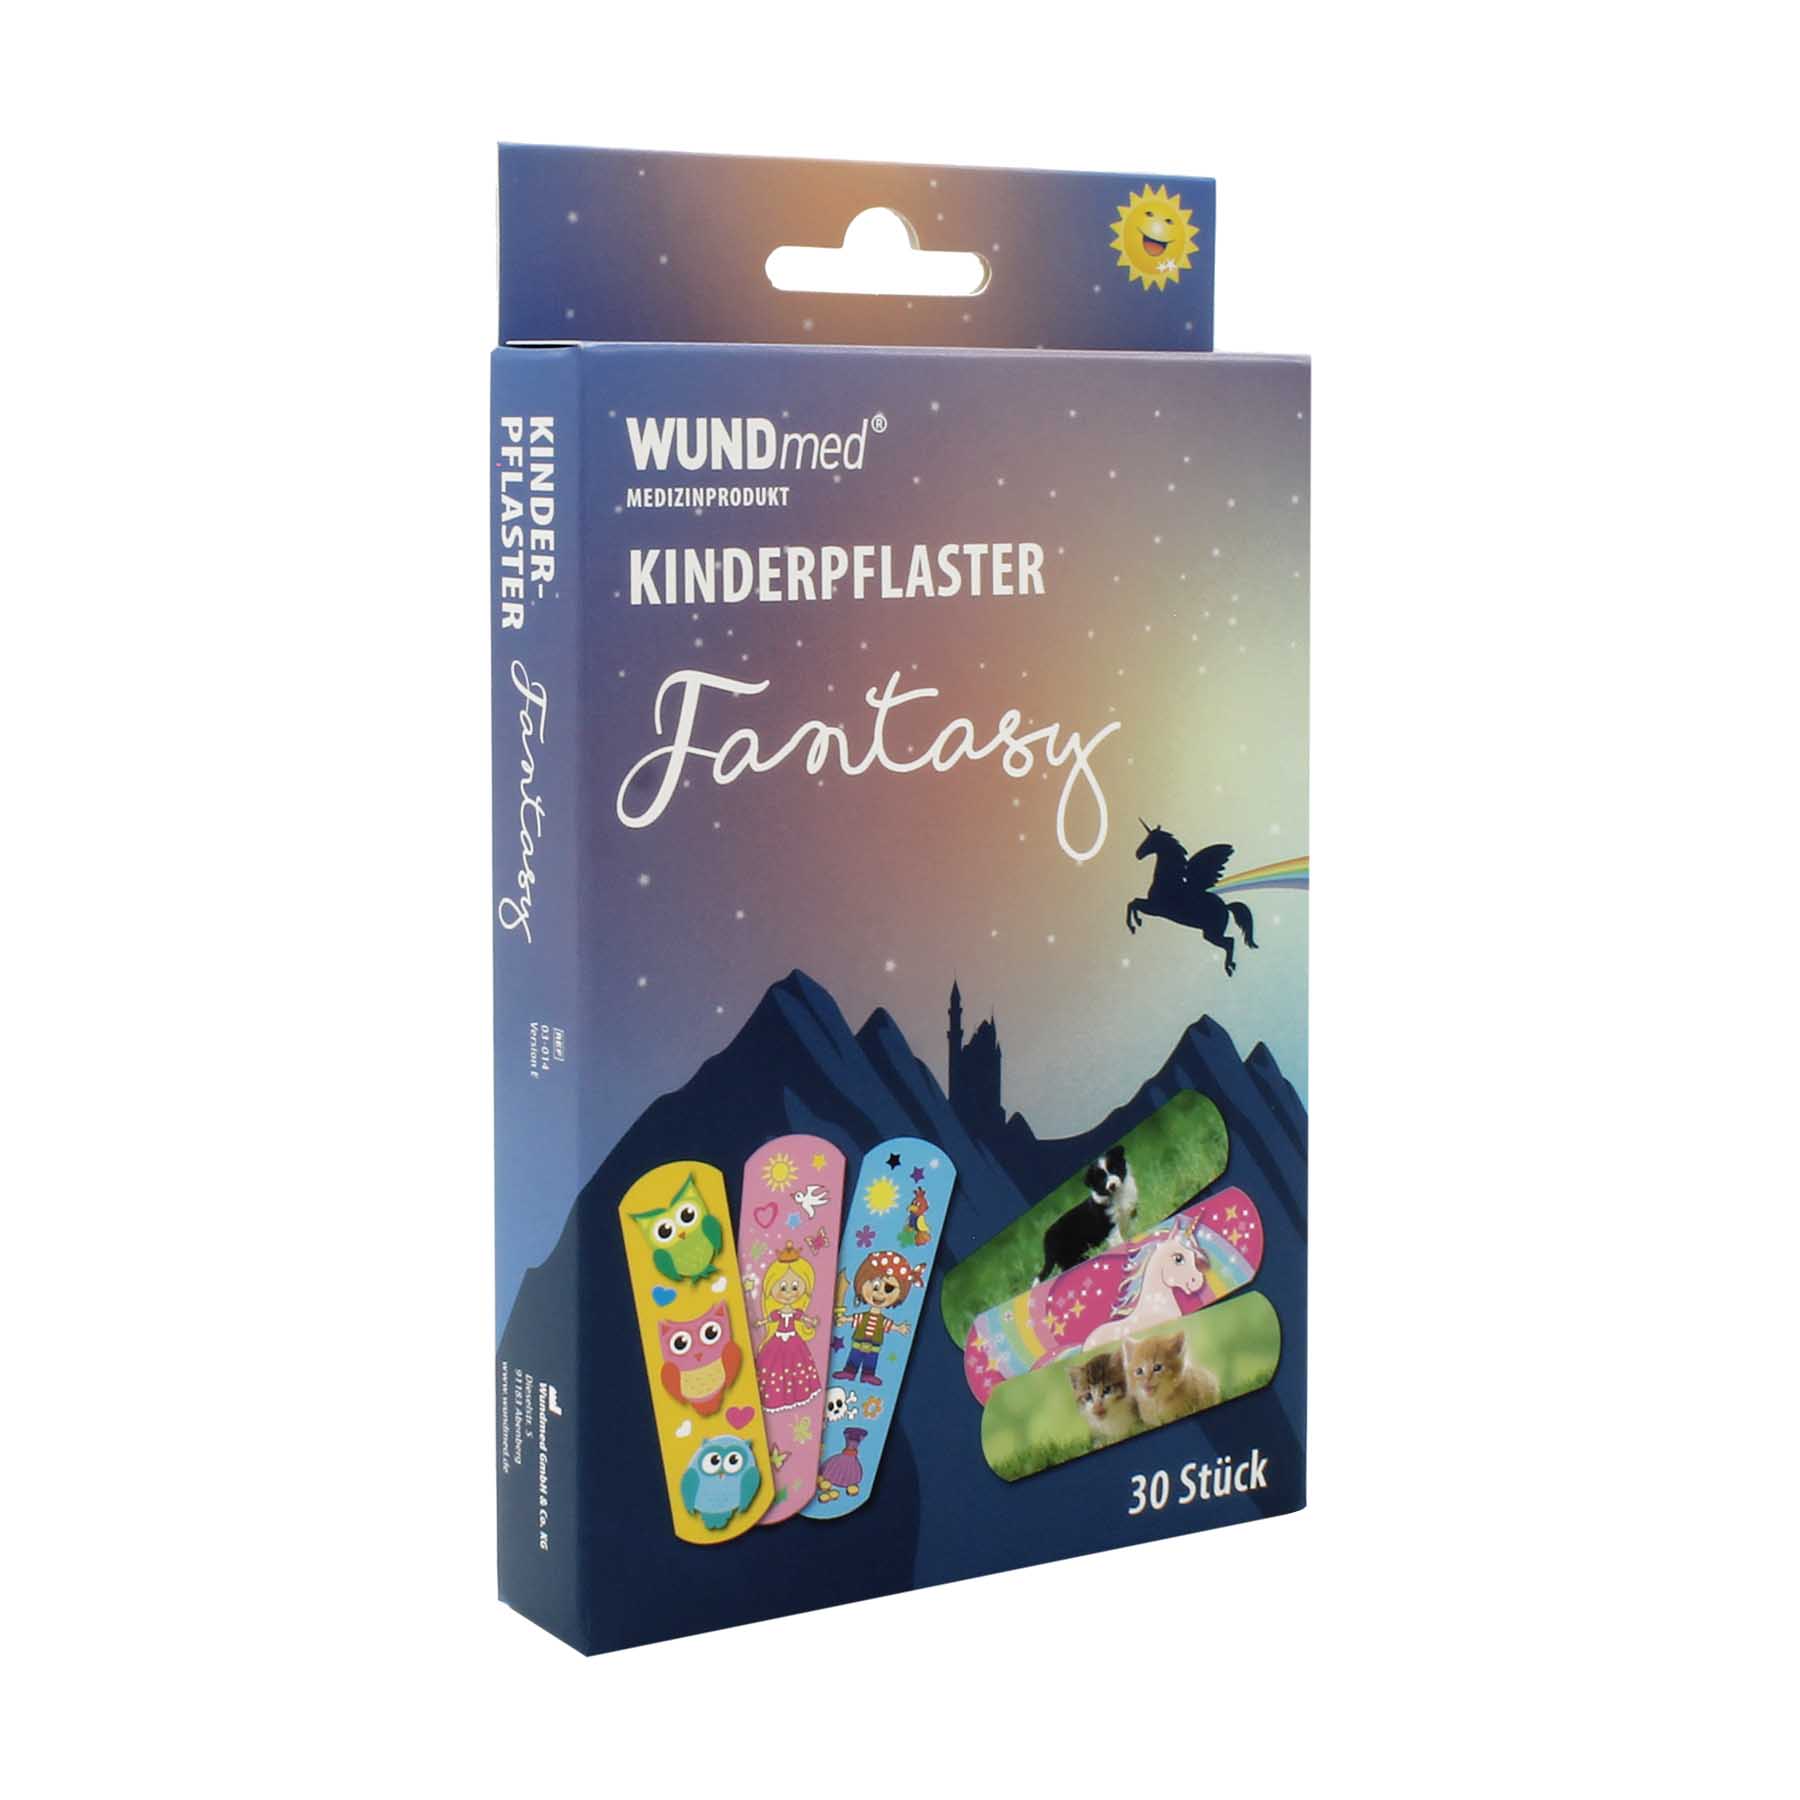 WUNDmed® Kinderpflaster "Fantasy" 63 x 19 mm 30 Stück/Packung